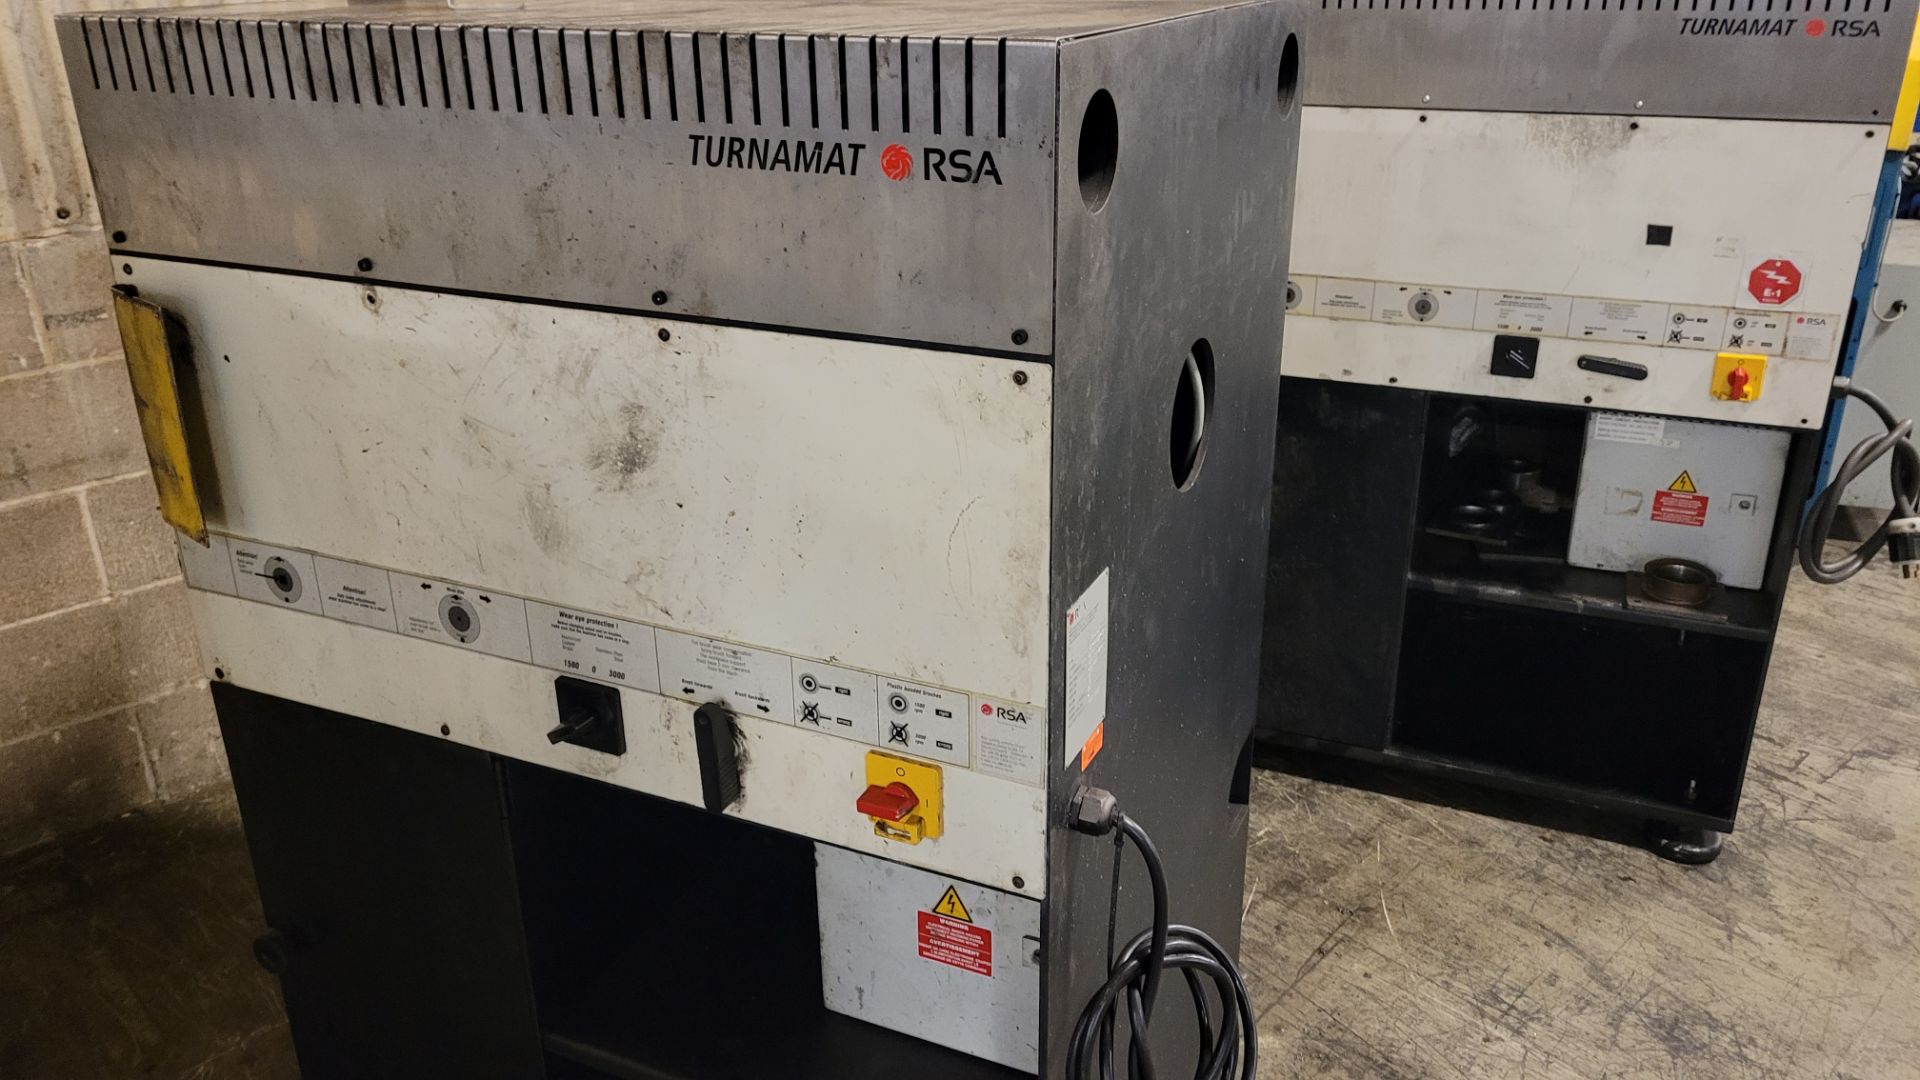 2018 RSA TURNAMAT DEBURRING MACHINE, 1,500 – 3,000 RPM, S/N RSA-14628-10 (RIGGING FEE $50) - Image 3 of 4